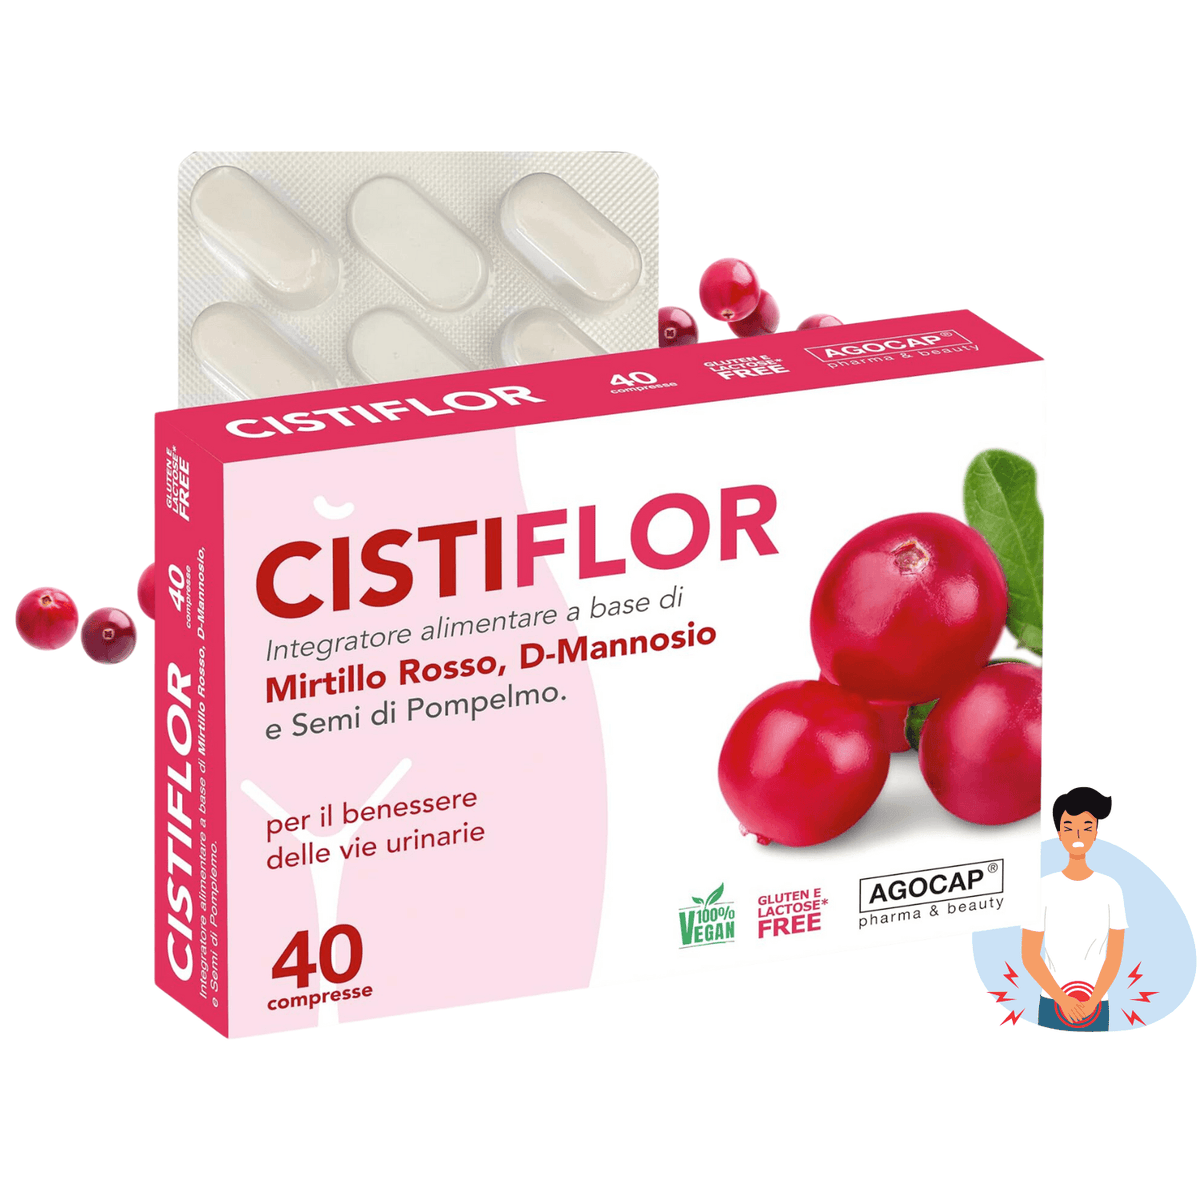 Cistiflor - Integratore a base di D-Mannosio Mirtillo Rosso e Semi di Pompelmo - Agocap Pharma & Beauty